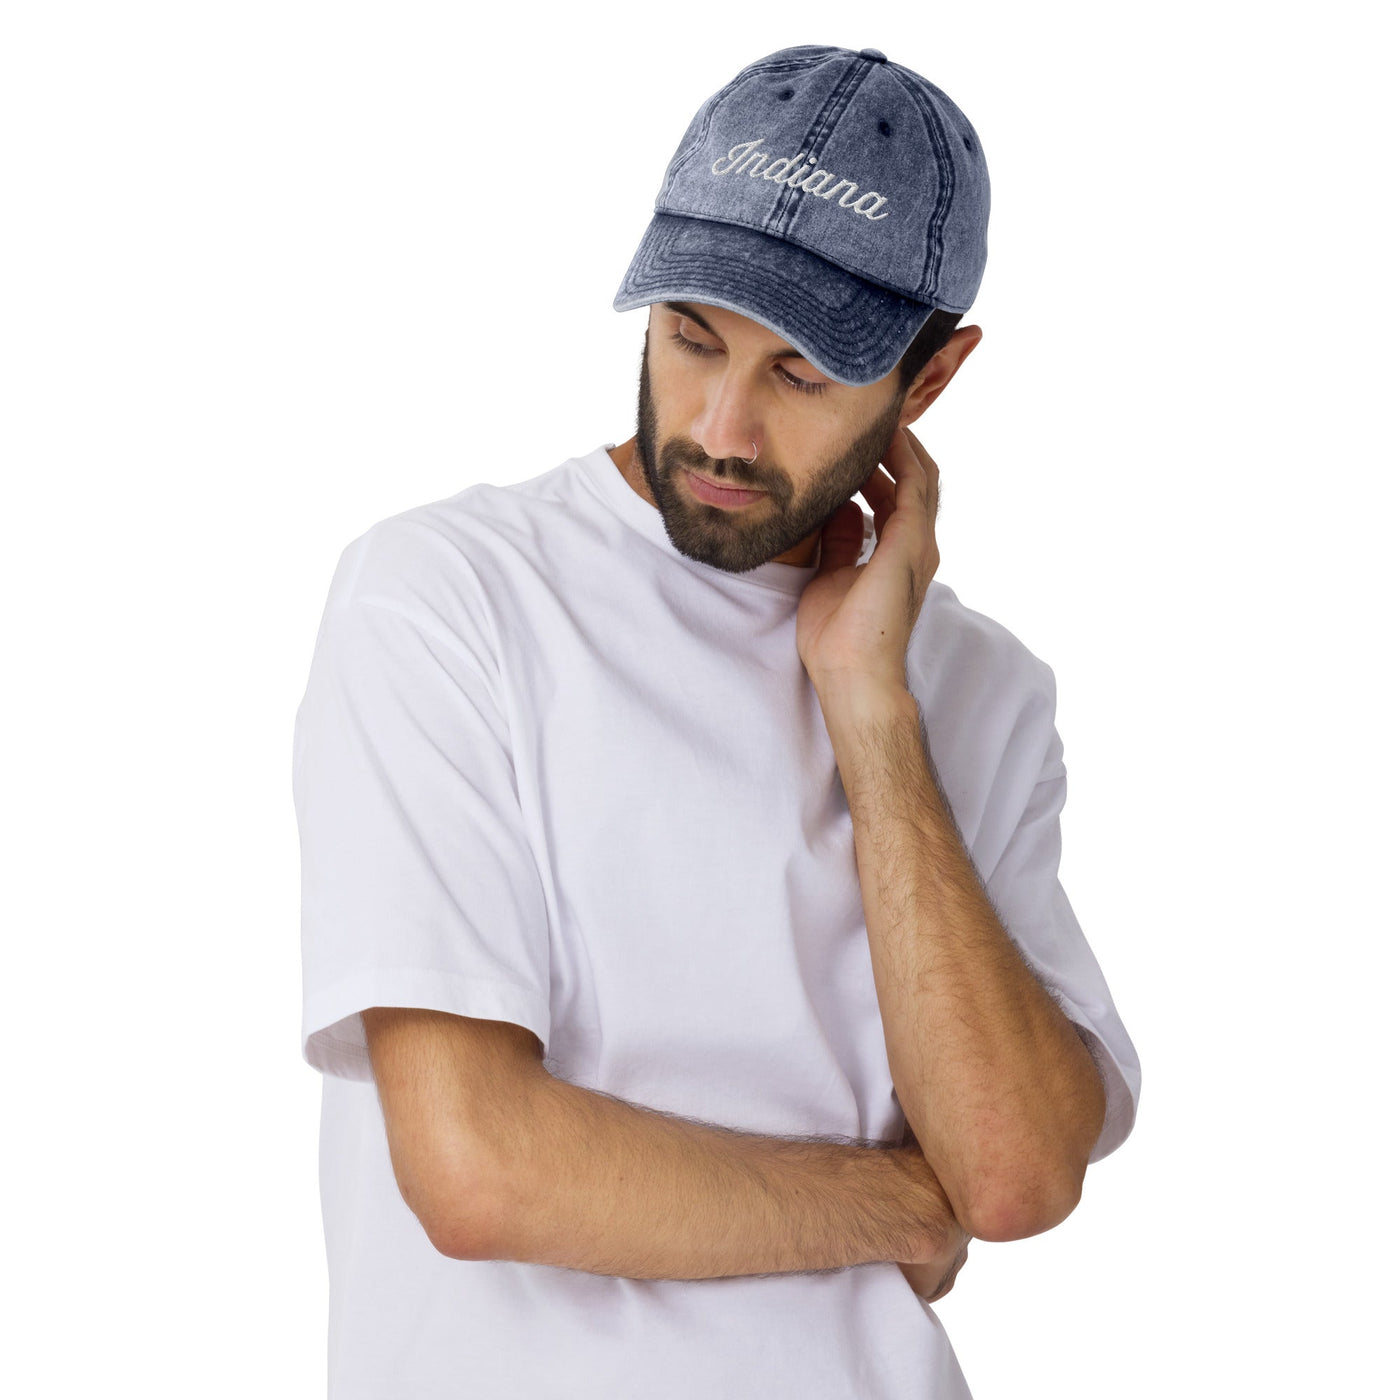 Indiana Hat - Ezra's Clothing